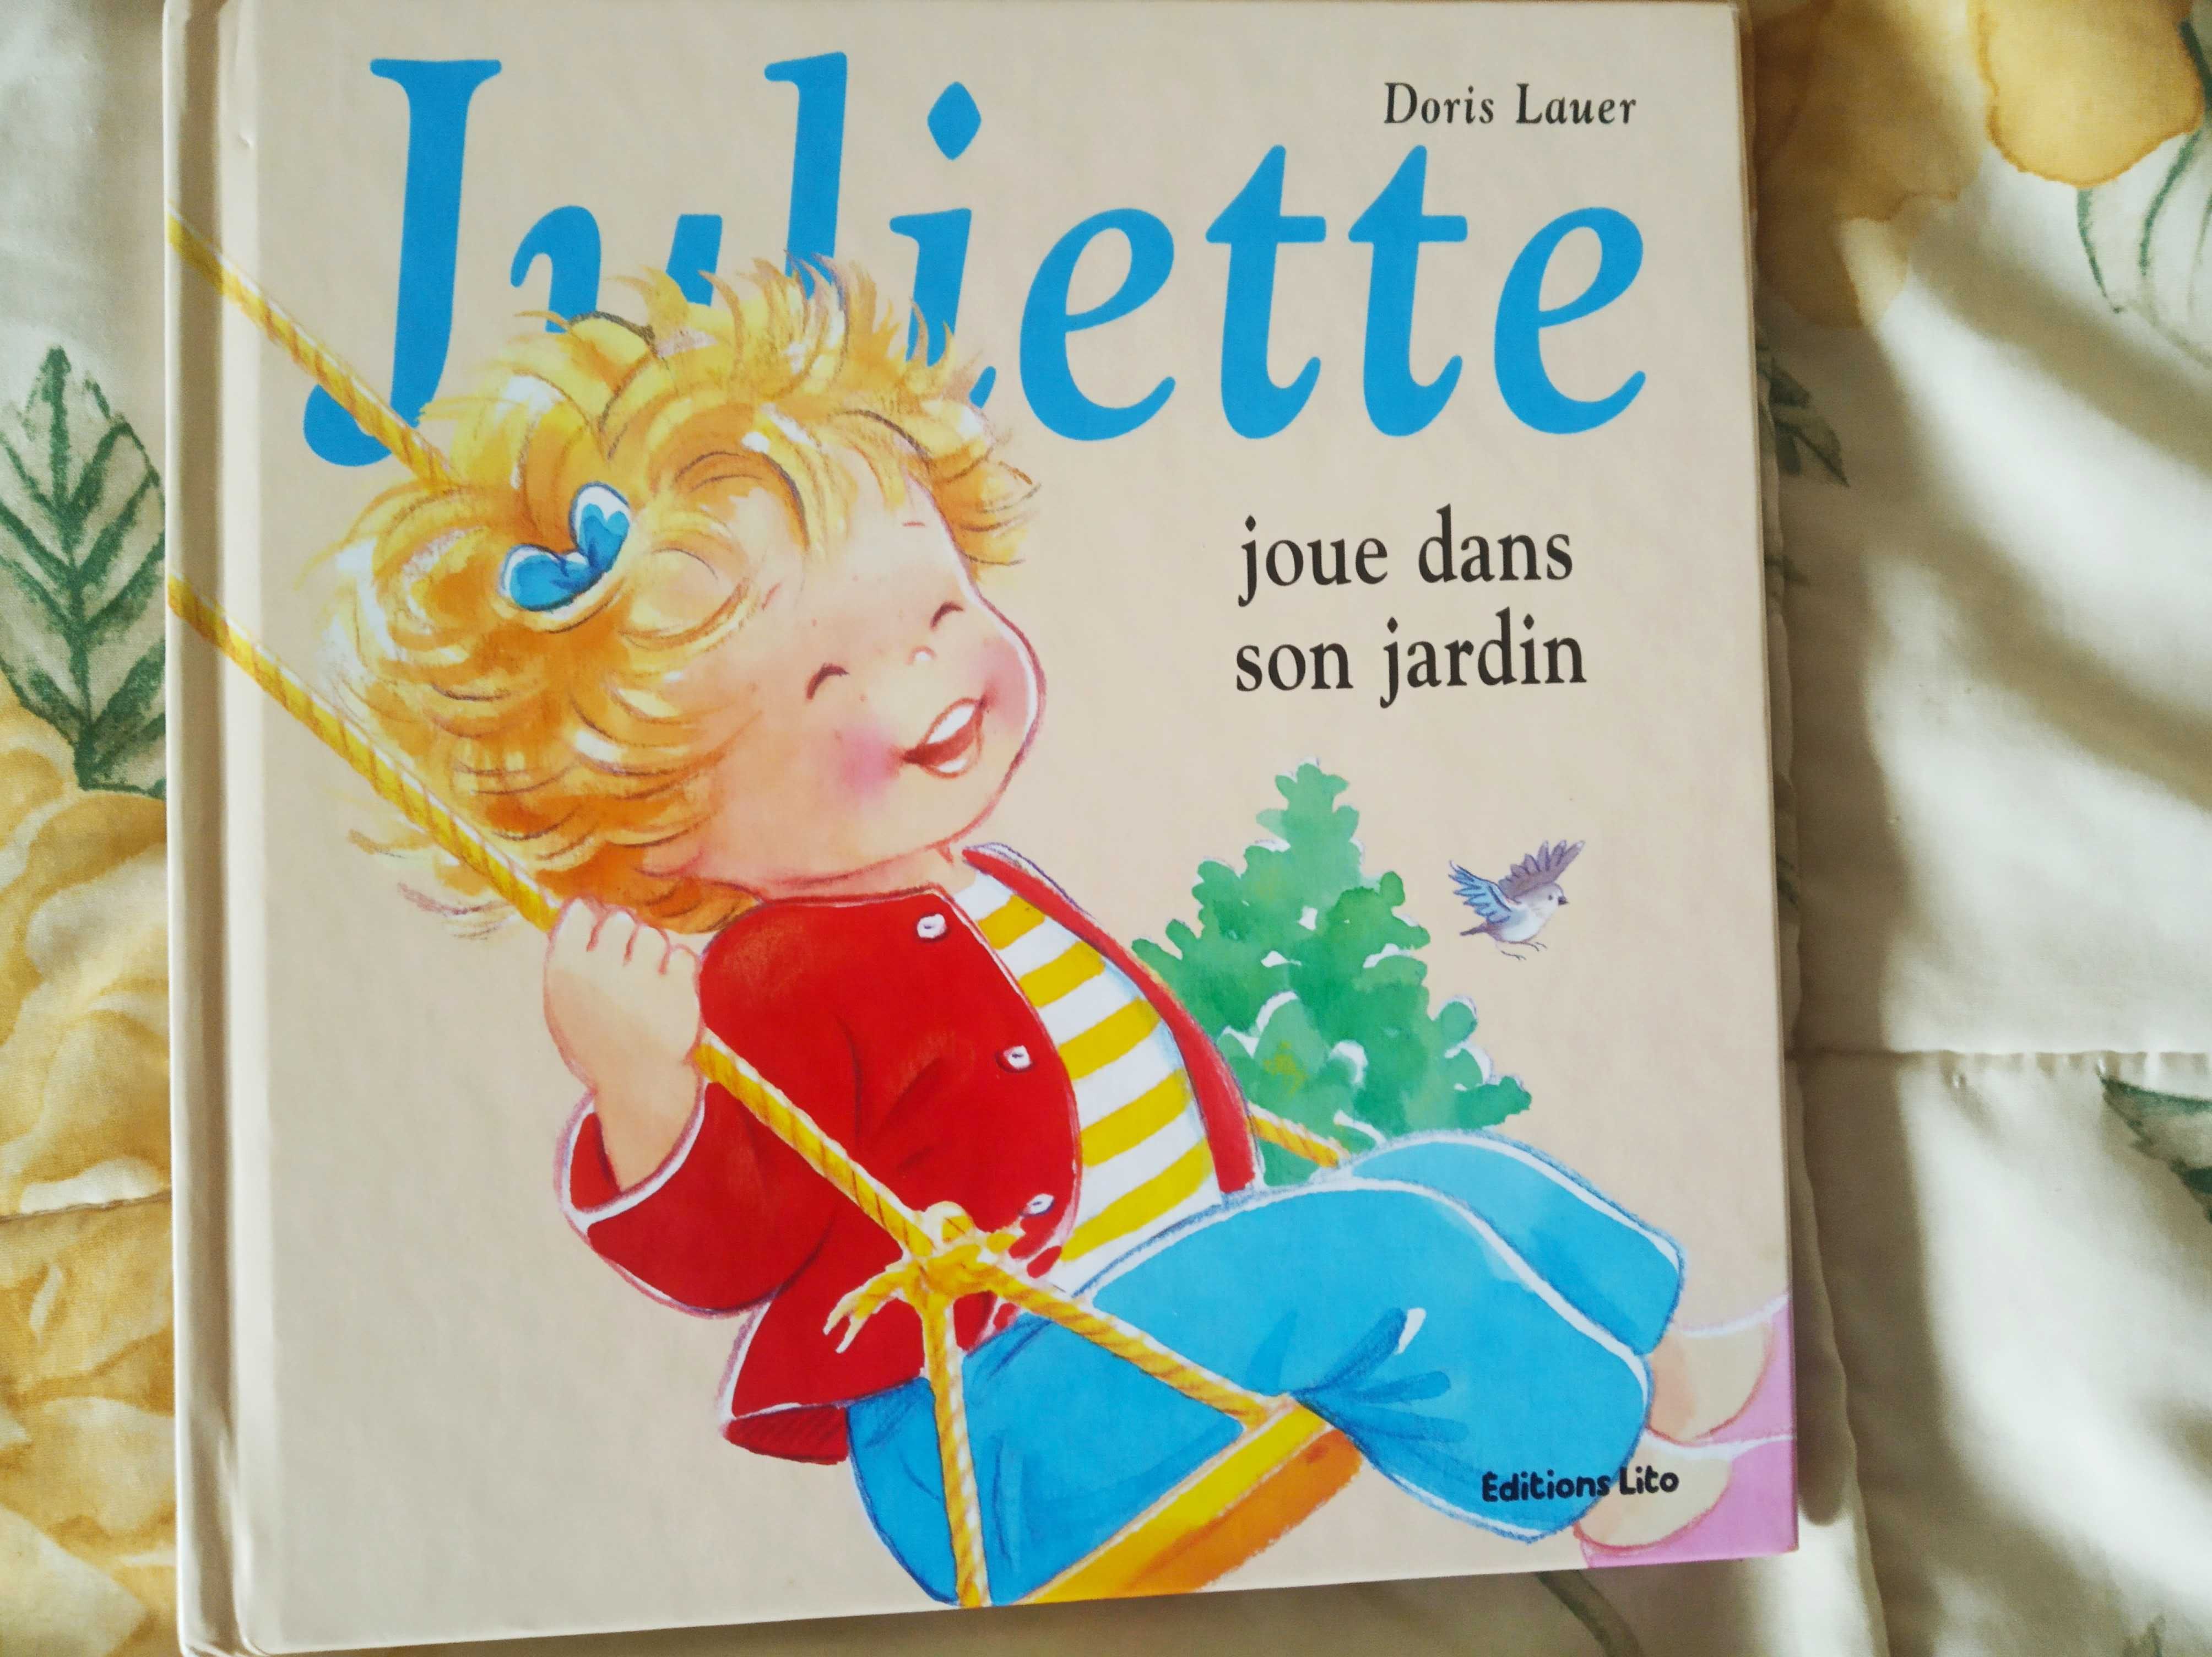 Детские книжки на французском  языке